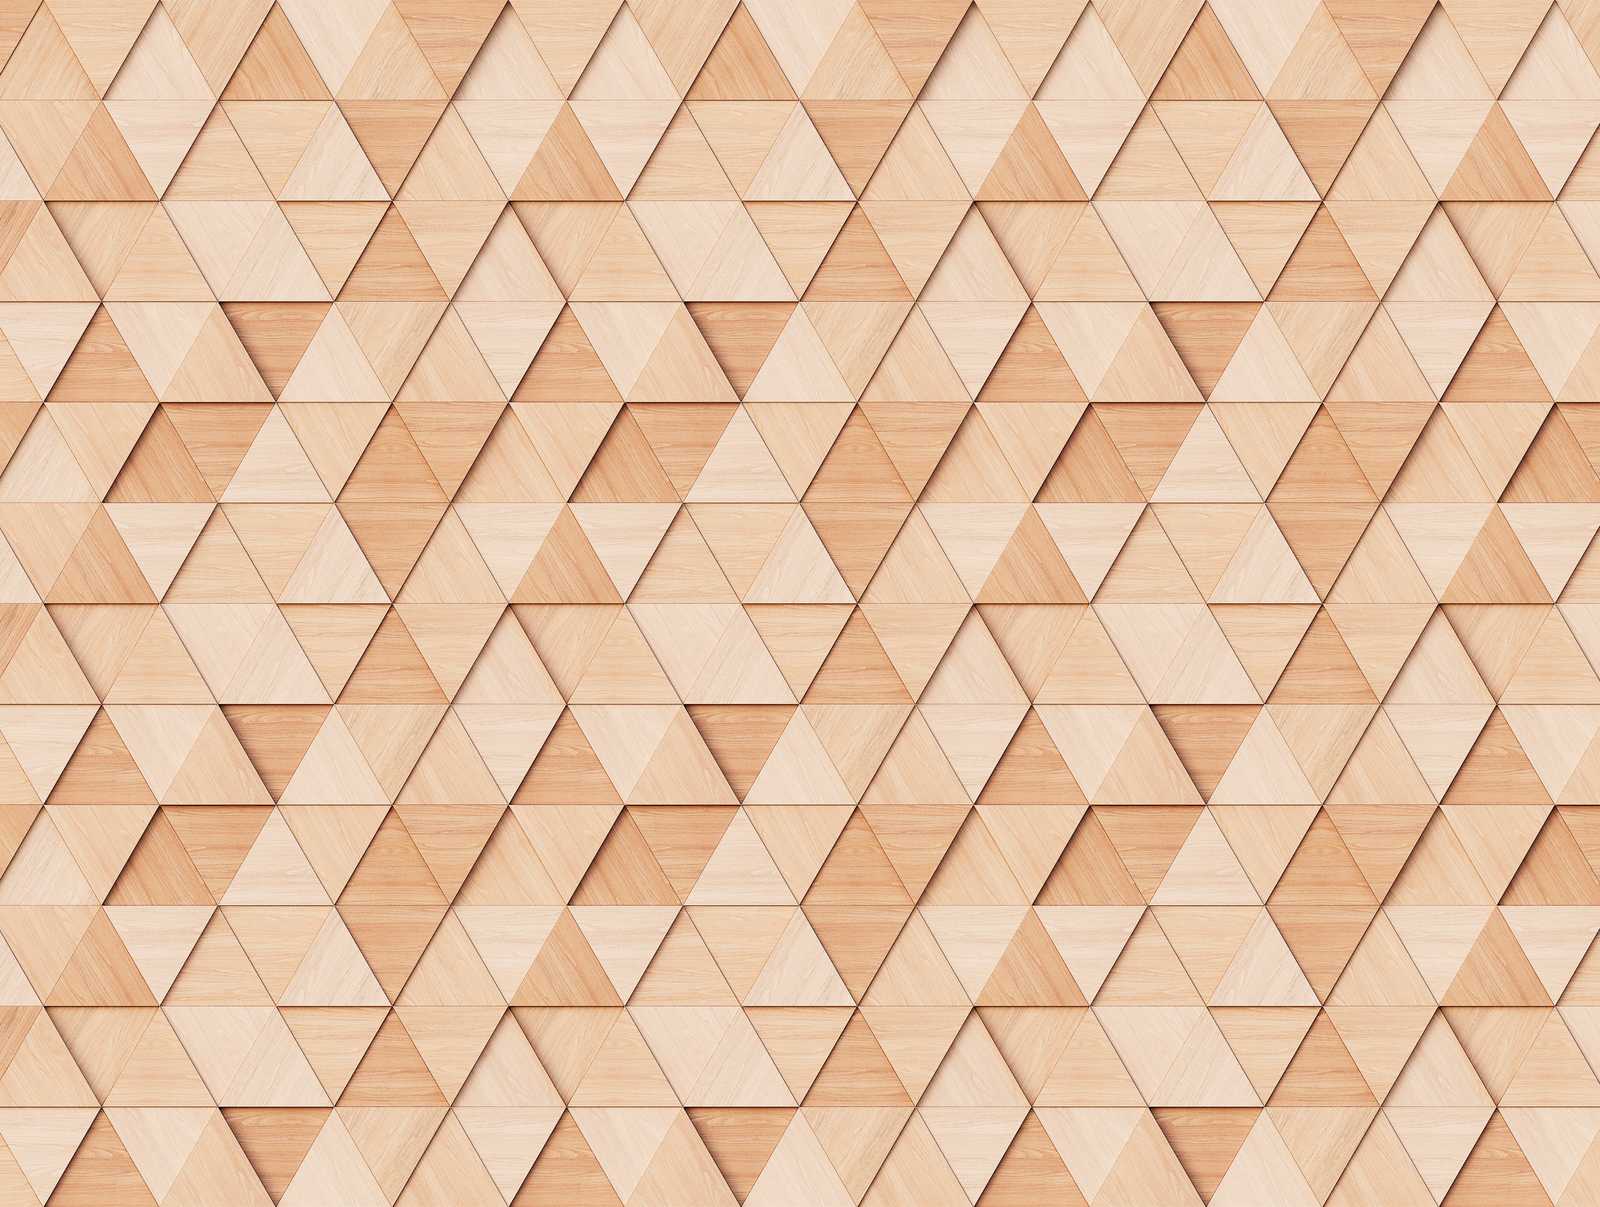             Papel pintado novedad - papel pintado con motivo de diseño de madera con patrón de triángulos en 3D
        